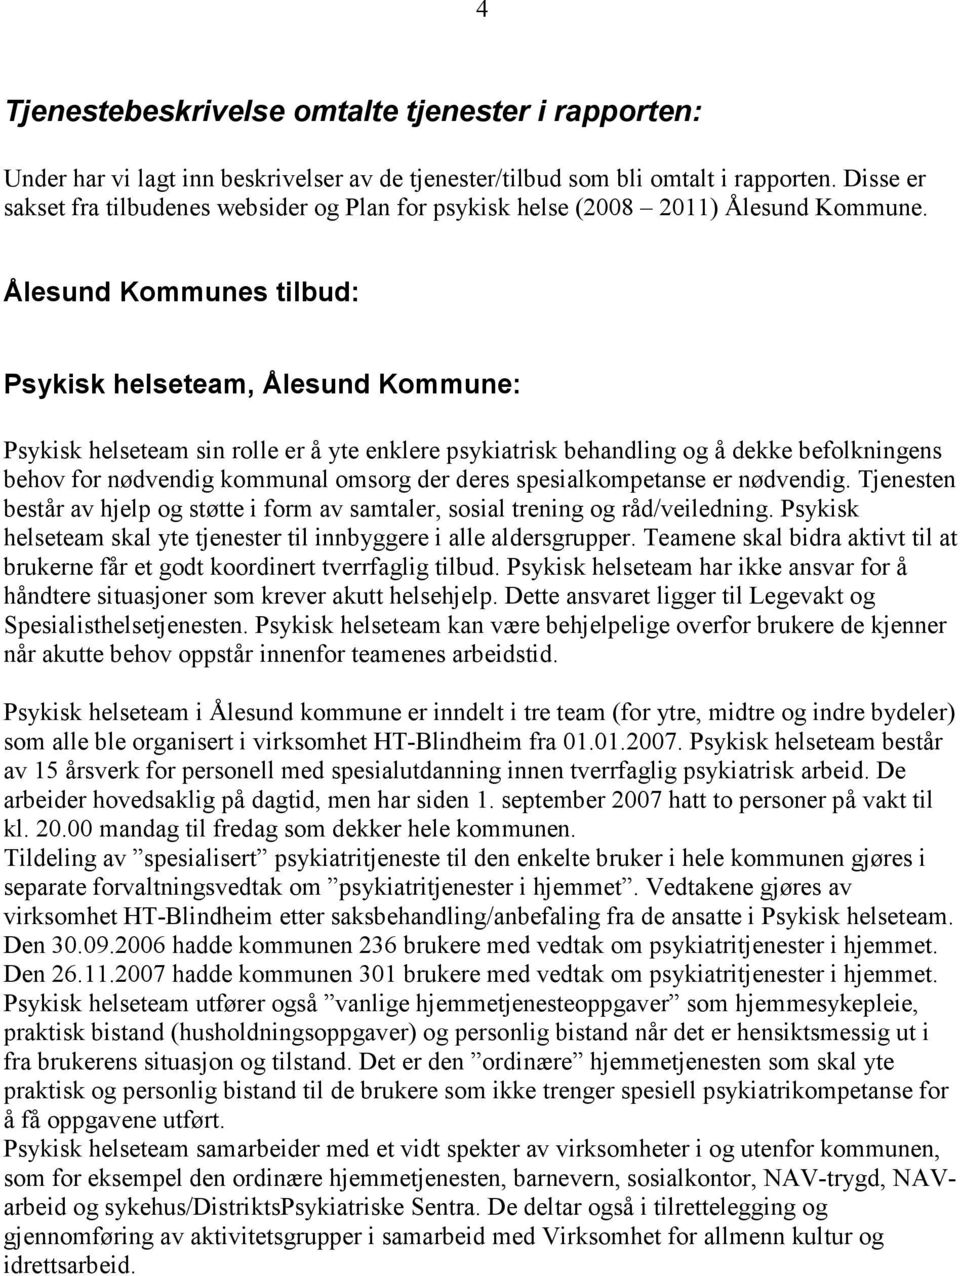 Ålesund Kommunes tilbud: Psykisk helseteam, Ålesund Kommune: Psykisk helseteam sin rolle er å yte enklere psykiatrisk behandling og å dekke befolkningens behov for nødvendig kommunal omsorg der deres